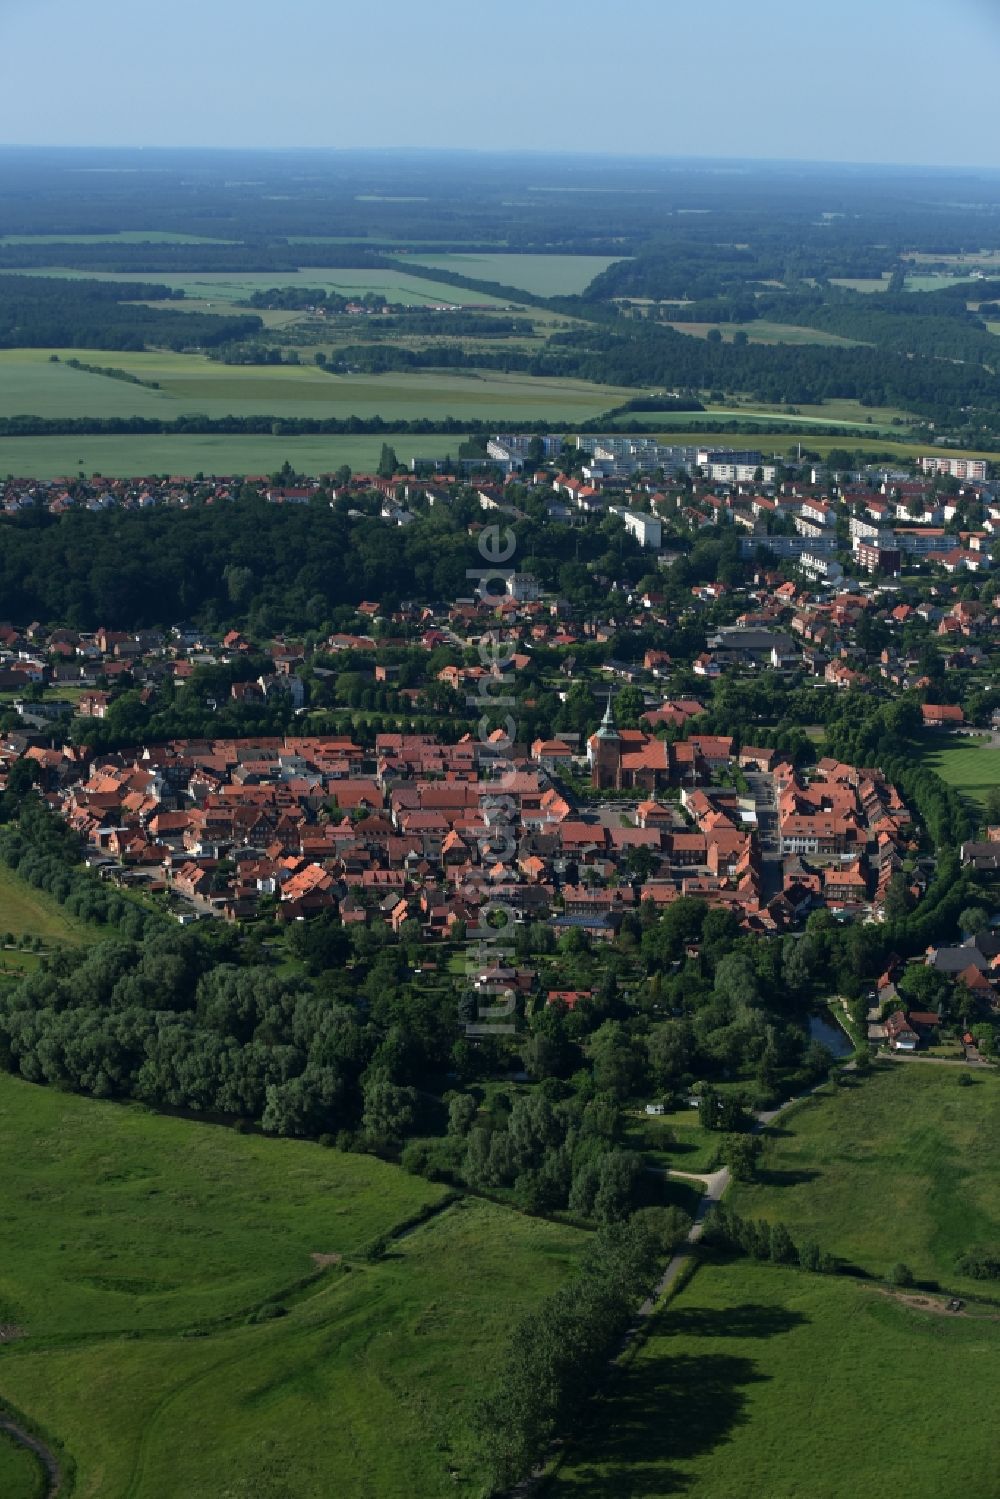 Luftbild Boizenburg/Elbe - Altstadtbereich und Innenstadtzentrum in Boizenburg/Elbe im Bundesland Mecklenburg-Vorpommern